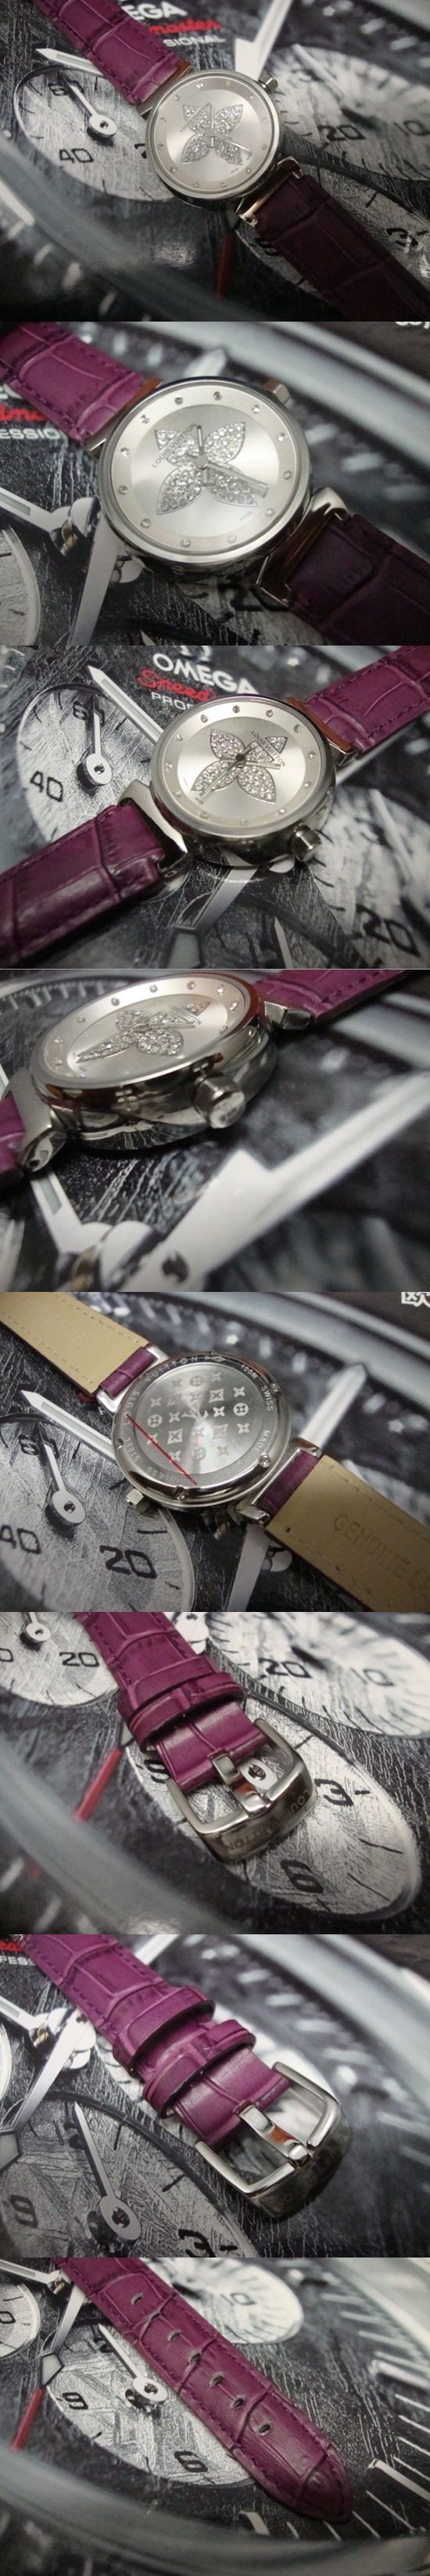 おしゃれなブランド時計がLOUIS-VUITTON-ルイヴィトン腕時計 ルイヴィトン 男/女性用腕時計 LOUIS-VUITTON-N-003Aを提供します.